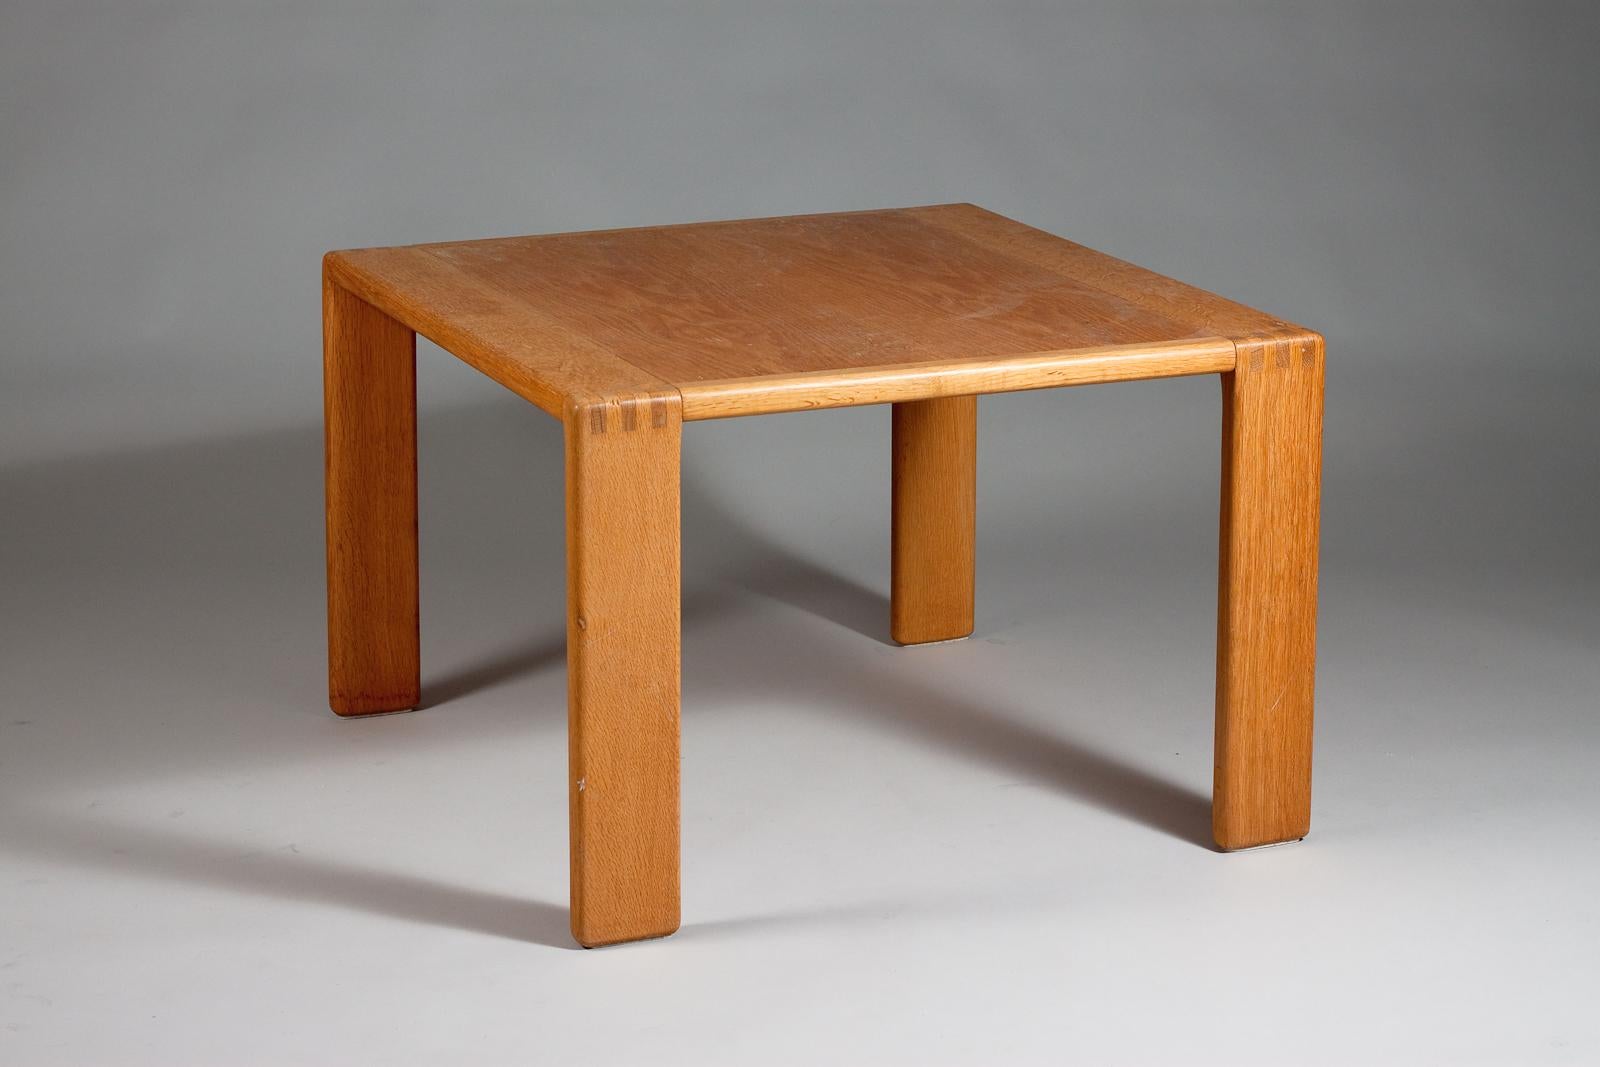 Cette superbe table basse Bonanza des années 1960 par Esko Pajamies est un véritable bijou de mobilier vintage. Fabriquée en bois de chêne de haute qualité et dotée d'un design moderne finlandais épuré, cette table basse est un complément parfait à